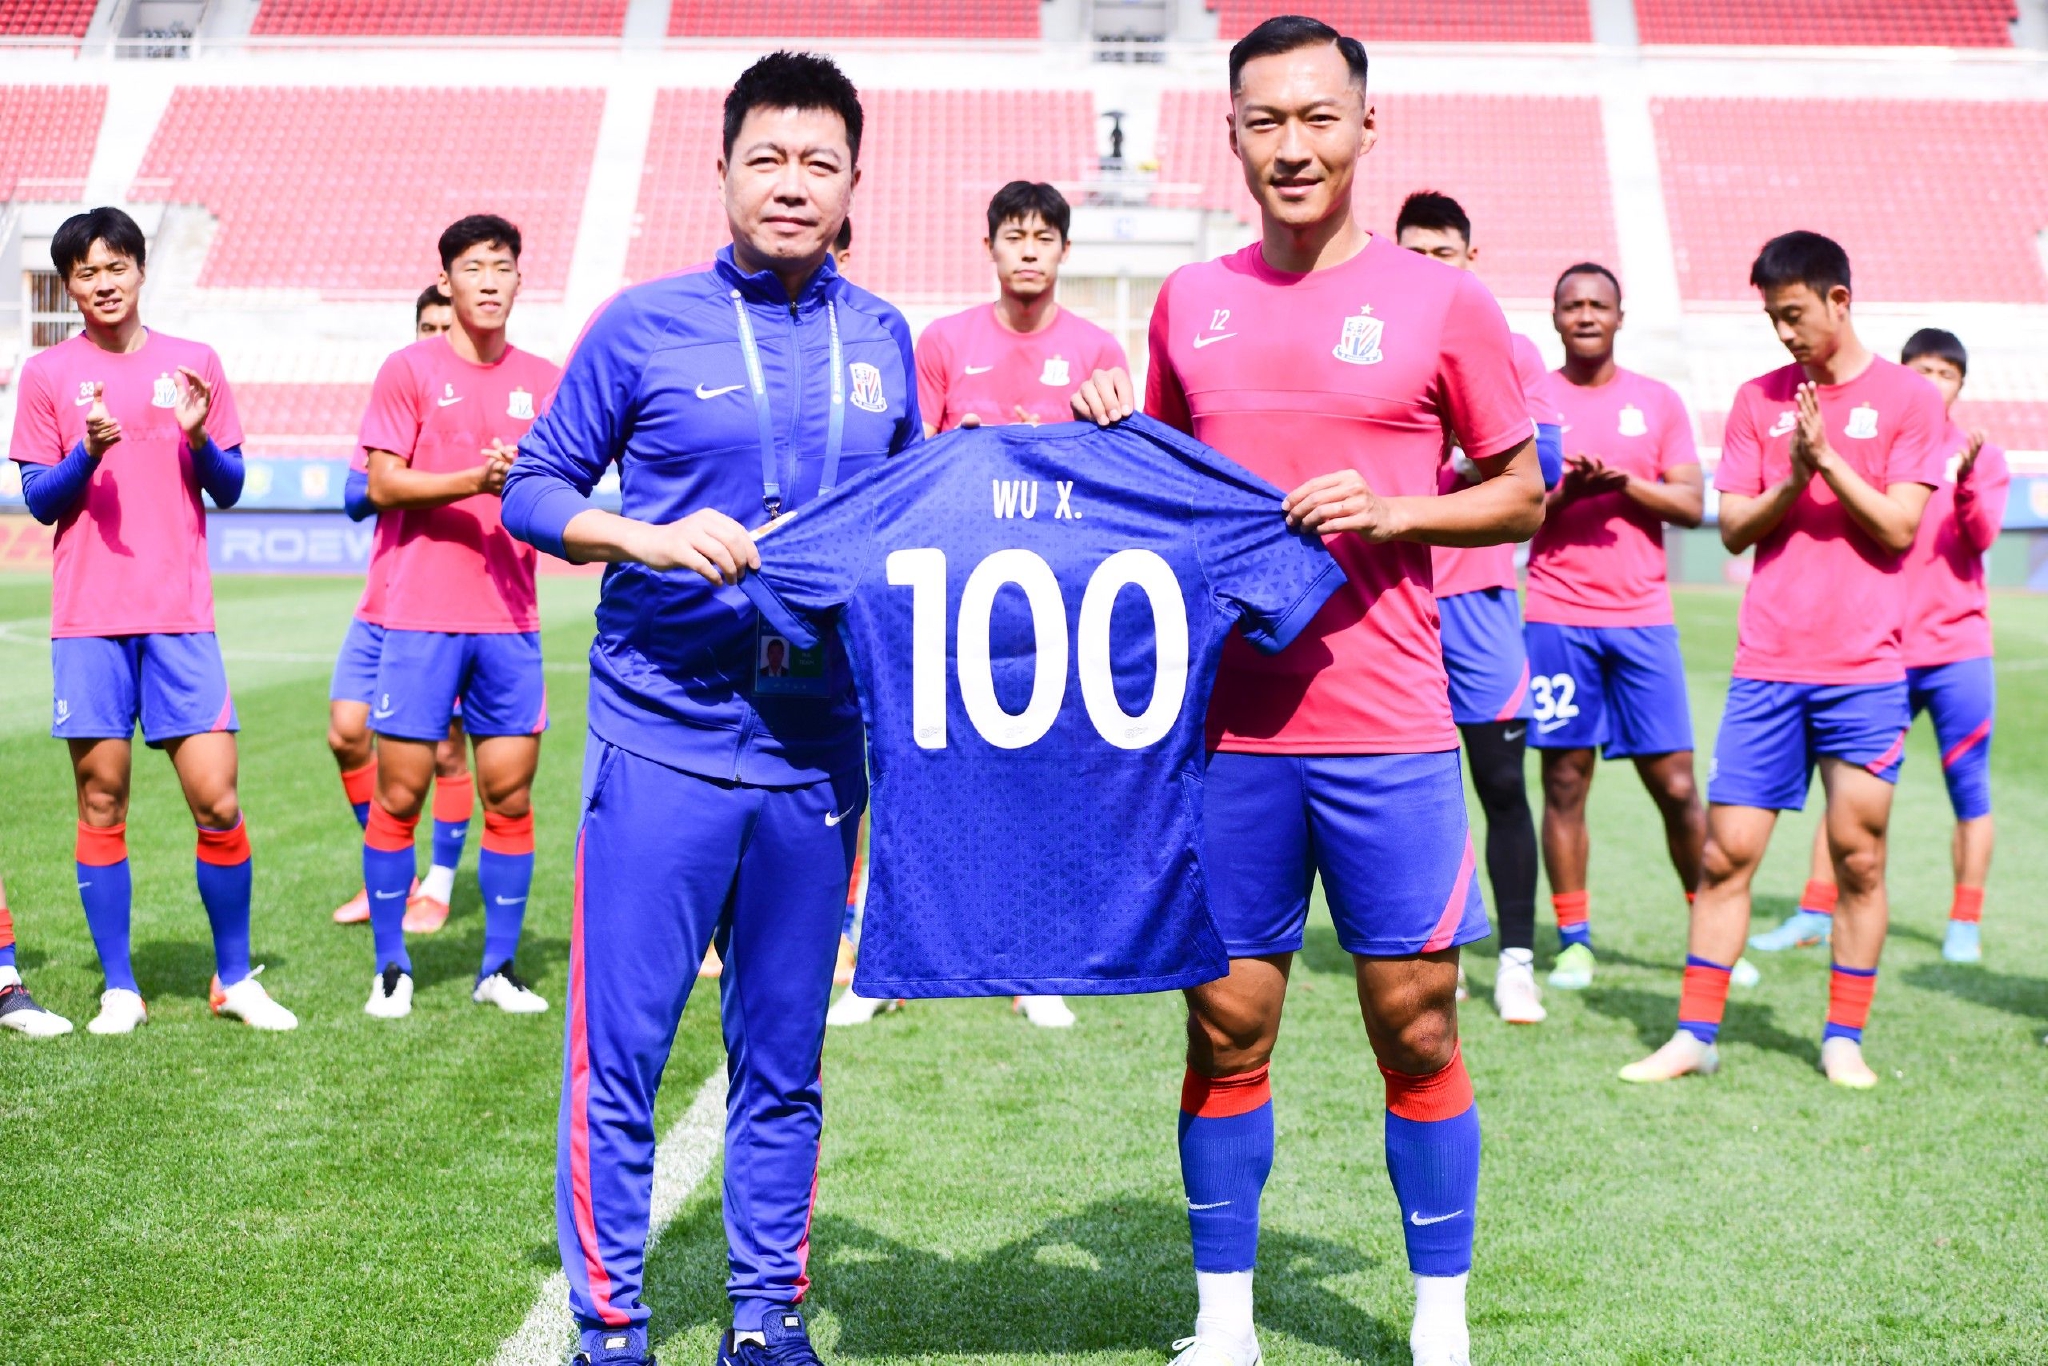 申花俱乐部为吴曦送上百场纪念球衣。